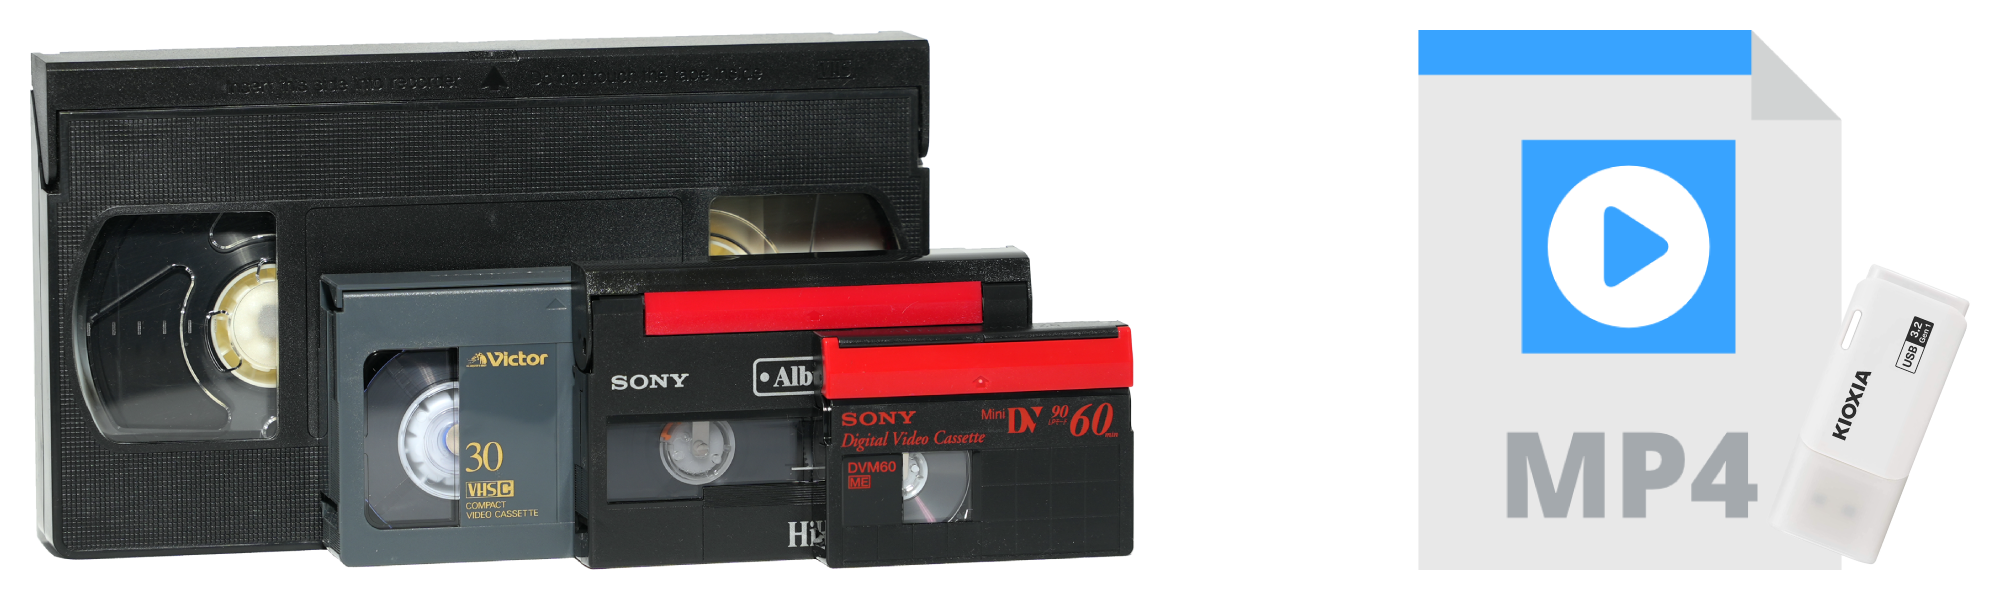 ビデオテープを動画データにダビングイメージ